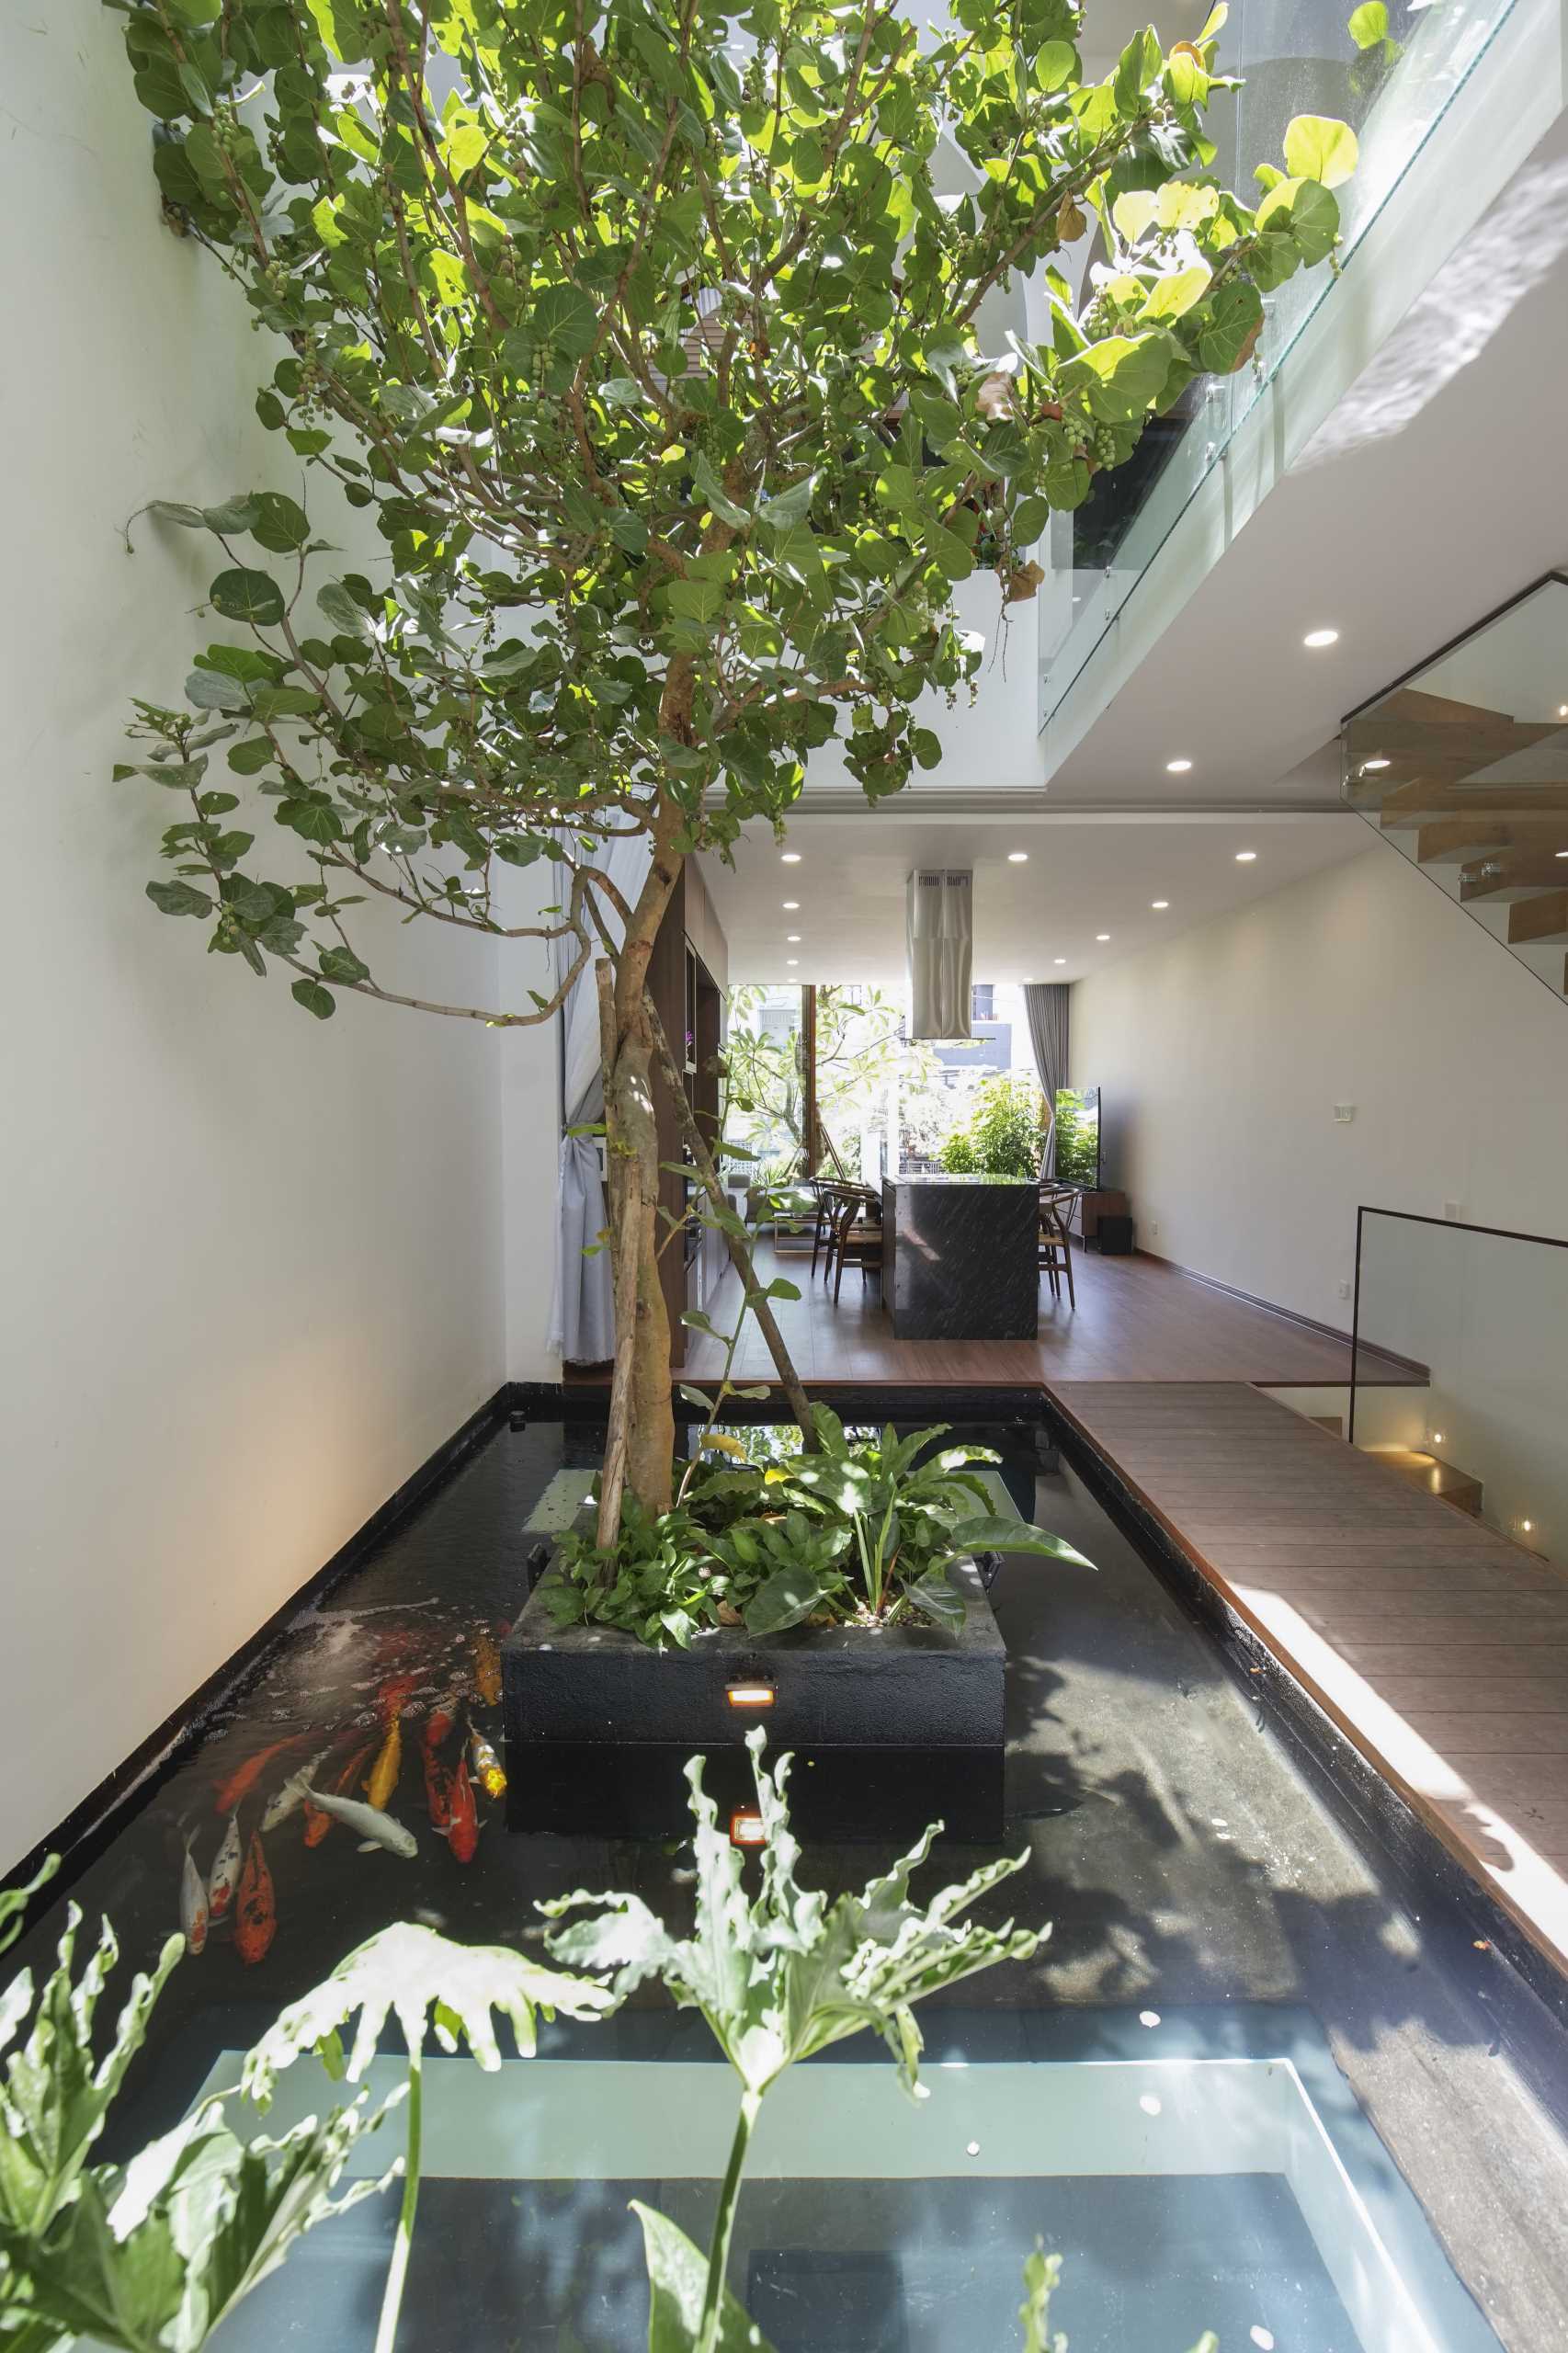 A modern interior with an atrium and koi pond.